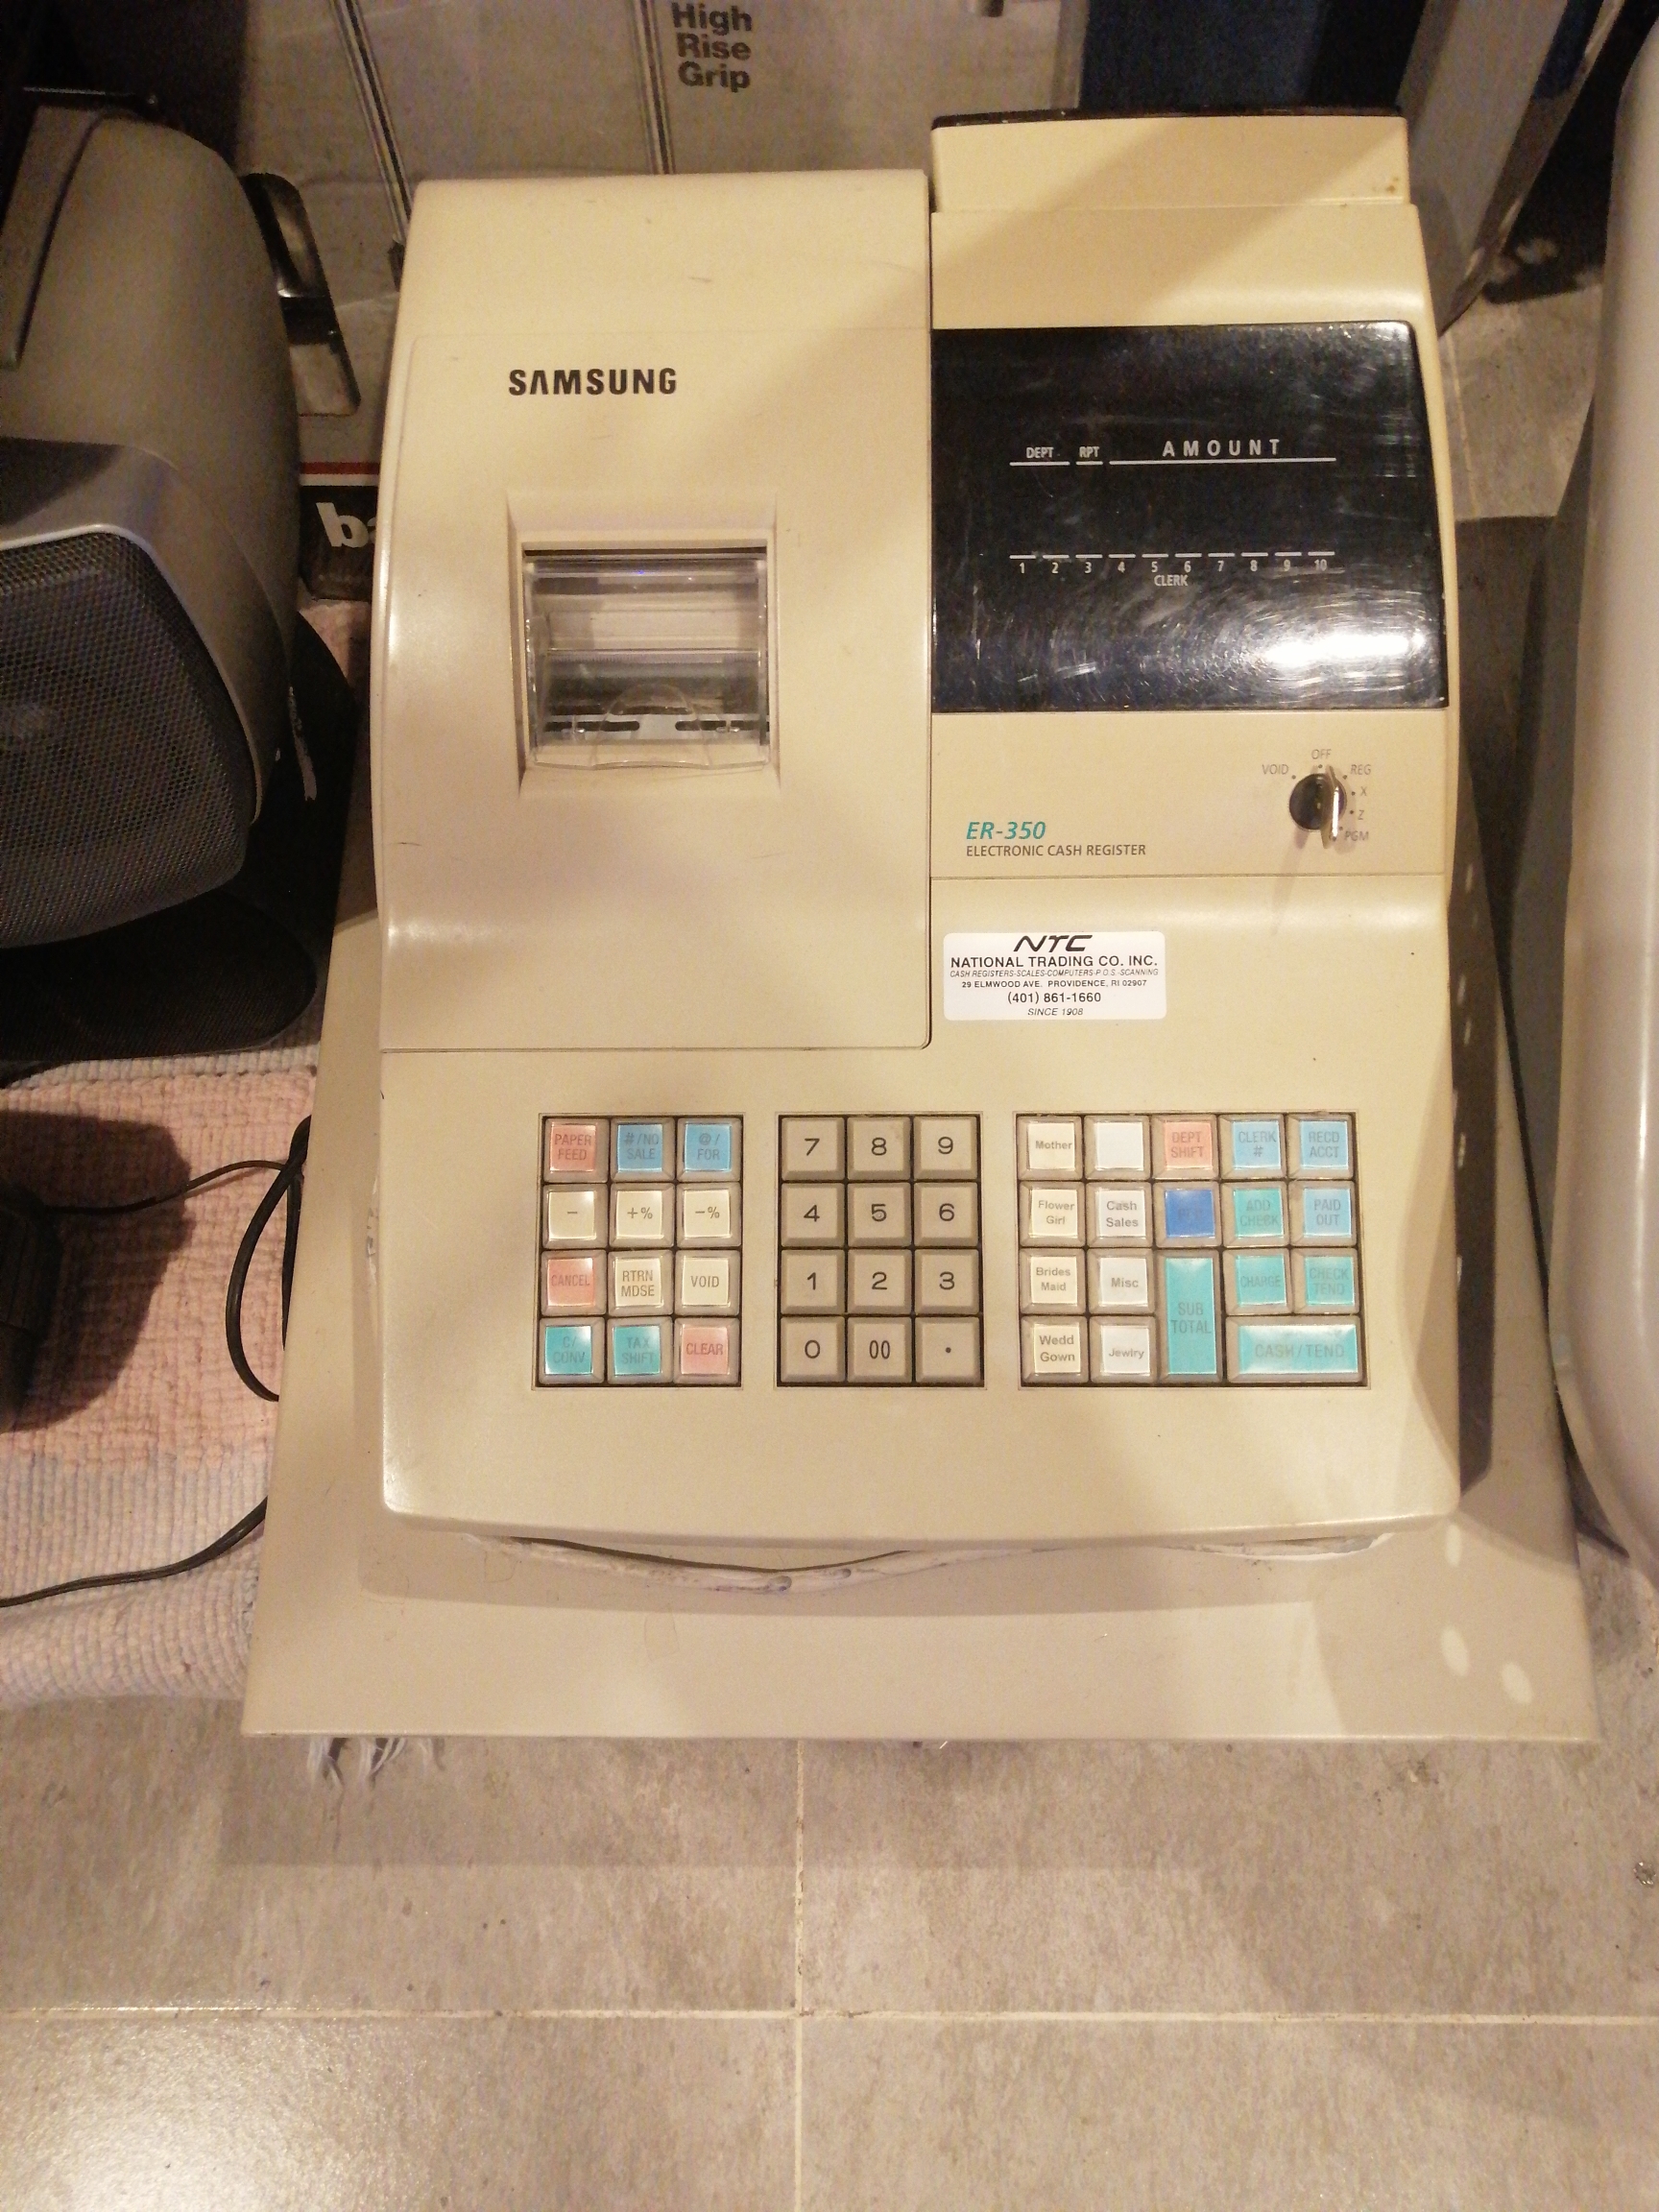 impresoras y scanners - Caja rejistradora Samsung usada en excelente condición Er-350